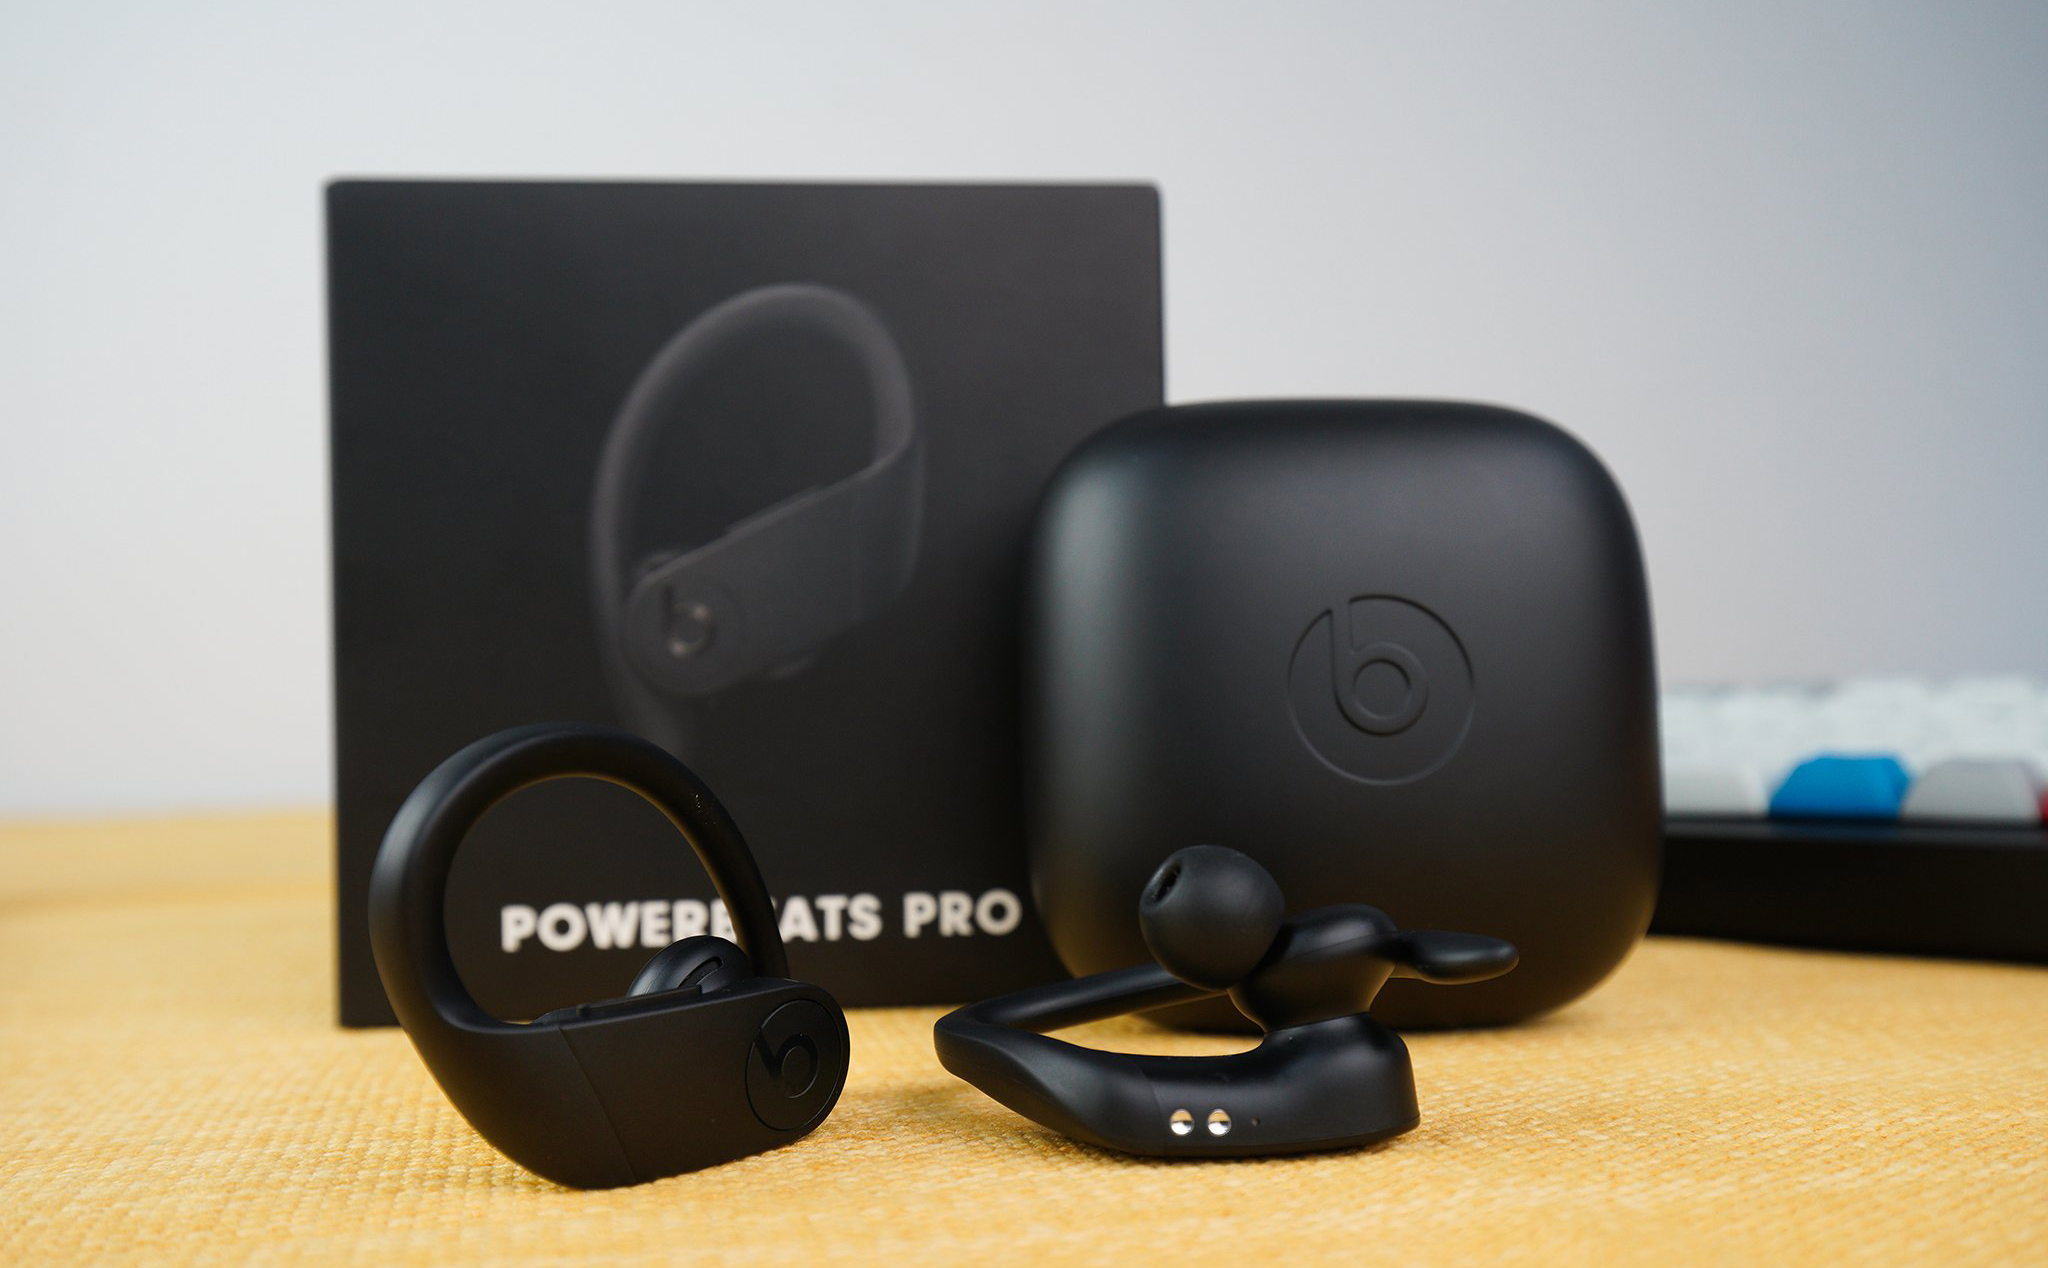 Lại nói về Powerbeats Pro - Tai nghe được đầu tư nhất của Beats, giá 250$